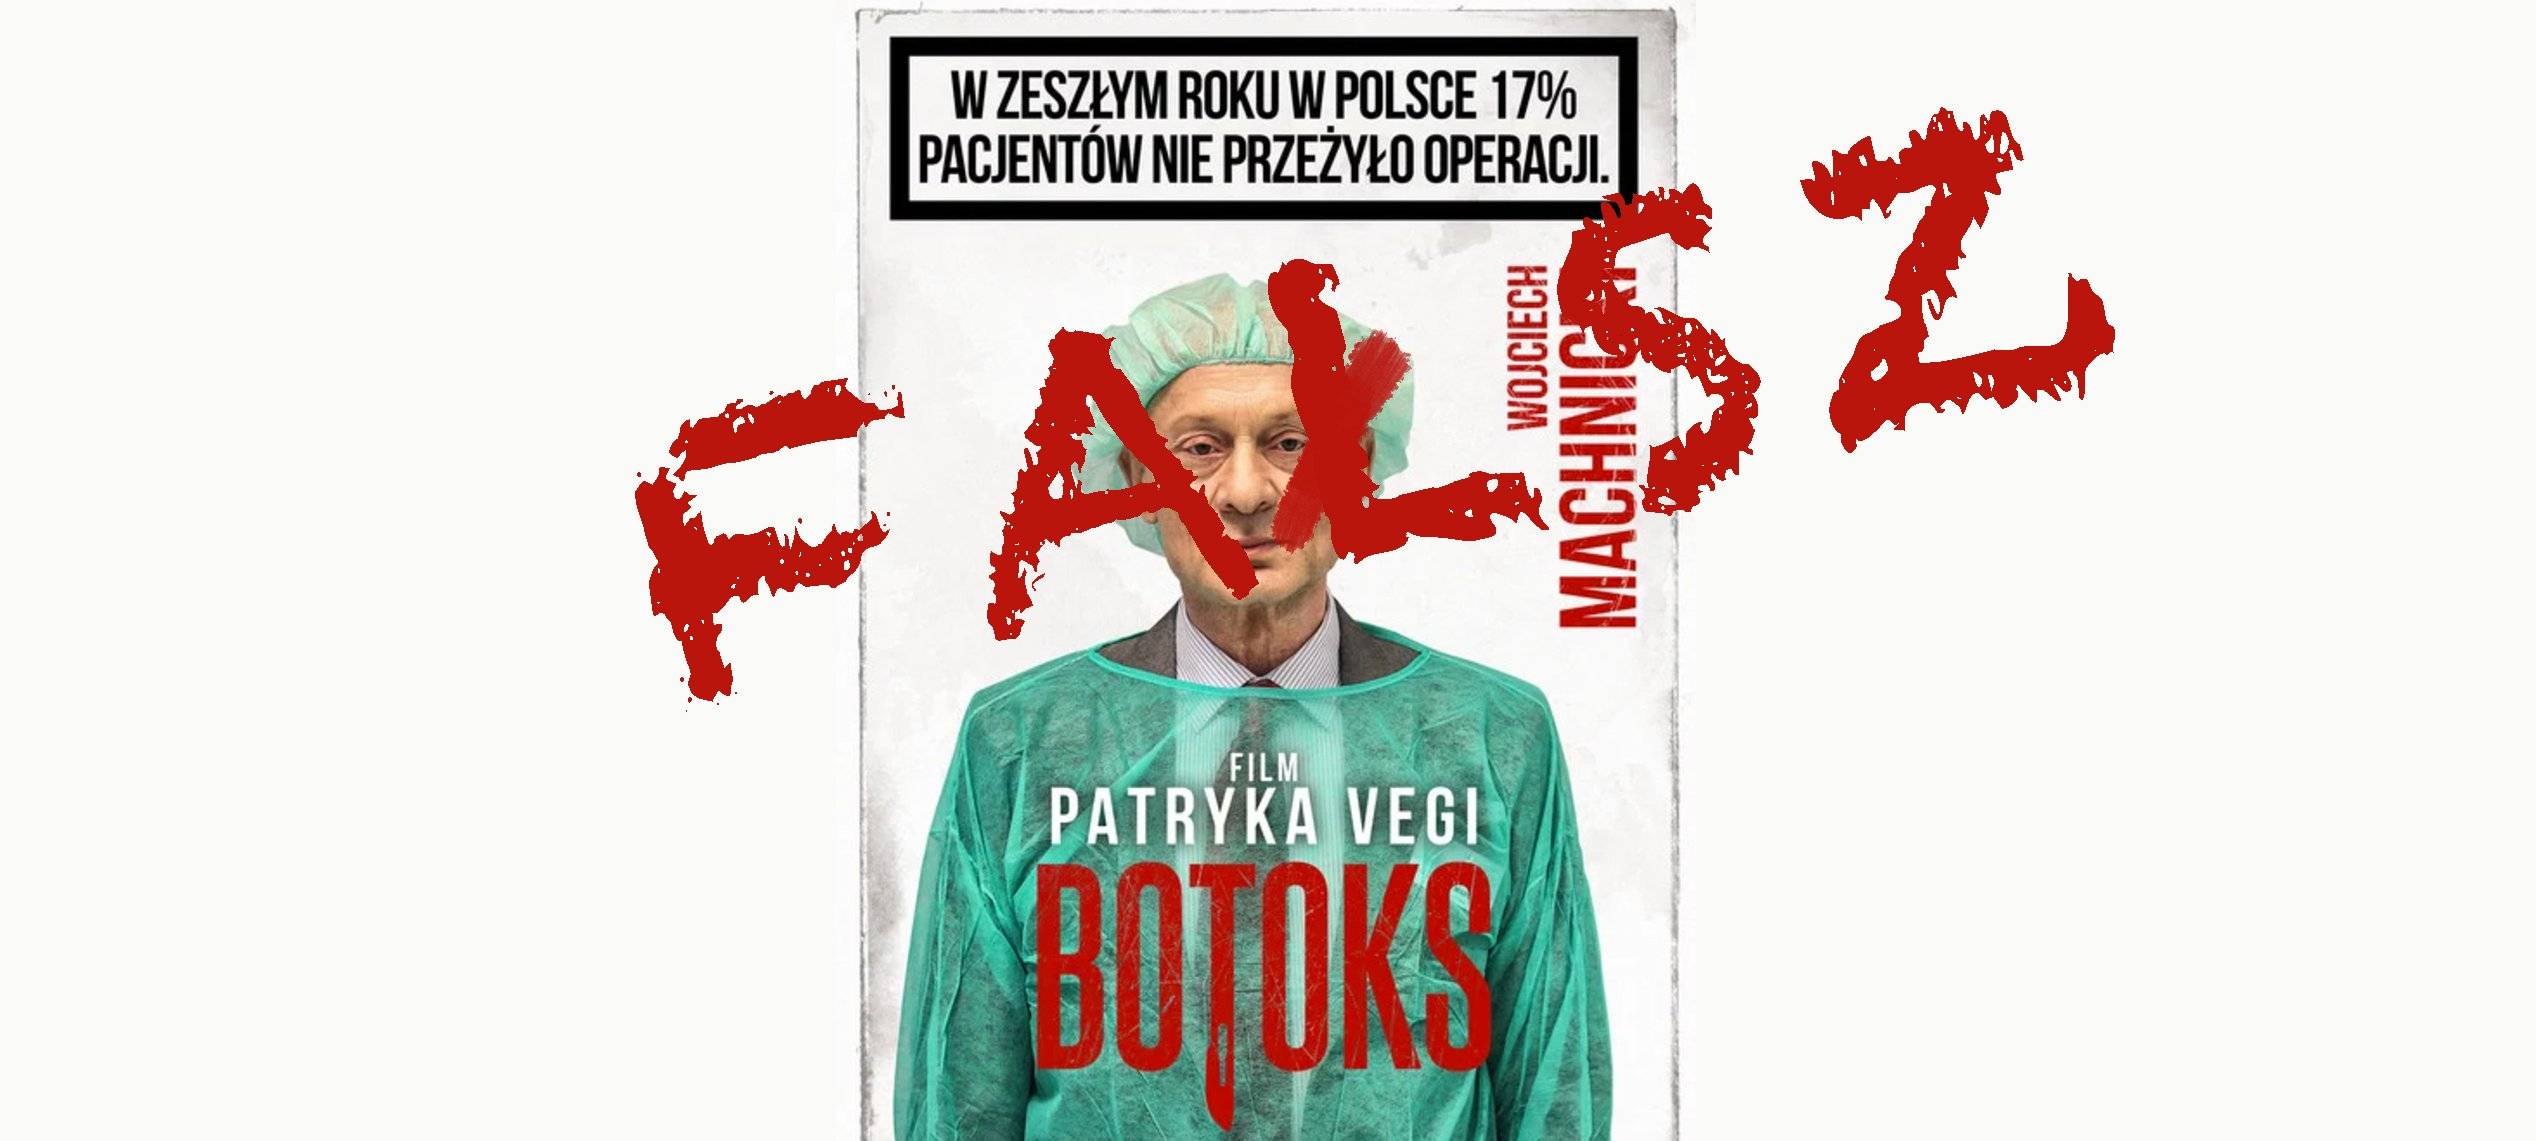 Grafika do artykułu Reklama “Botoksu” kłamie: po operacjach nie umiera 17 proc. pacjentów, tylko 0,6 proc. OKO.press składa skargę do UOKiK i Rady Etyki Reklamy